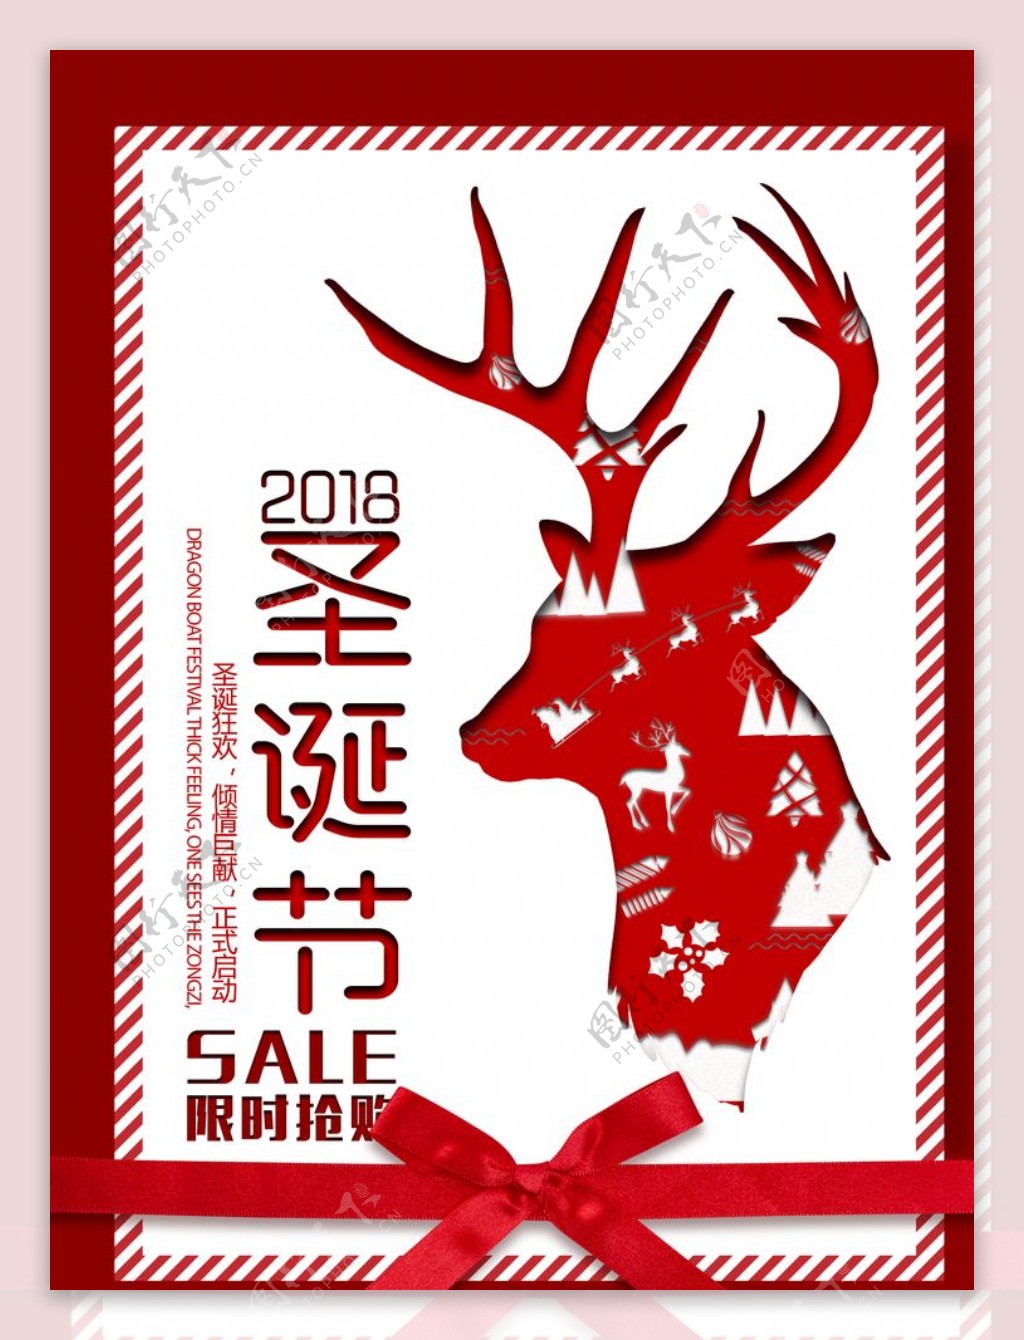 红色简约麋鹿圣诞节节日海报